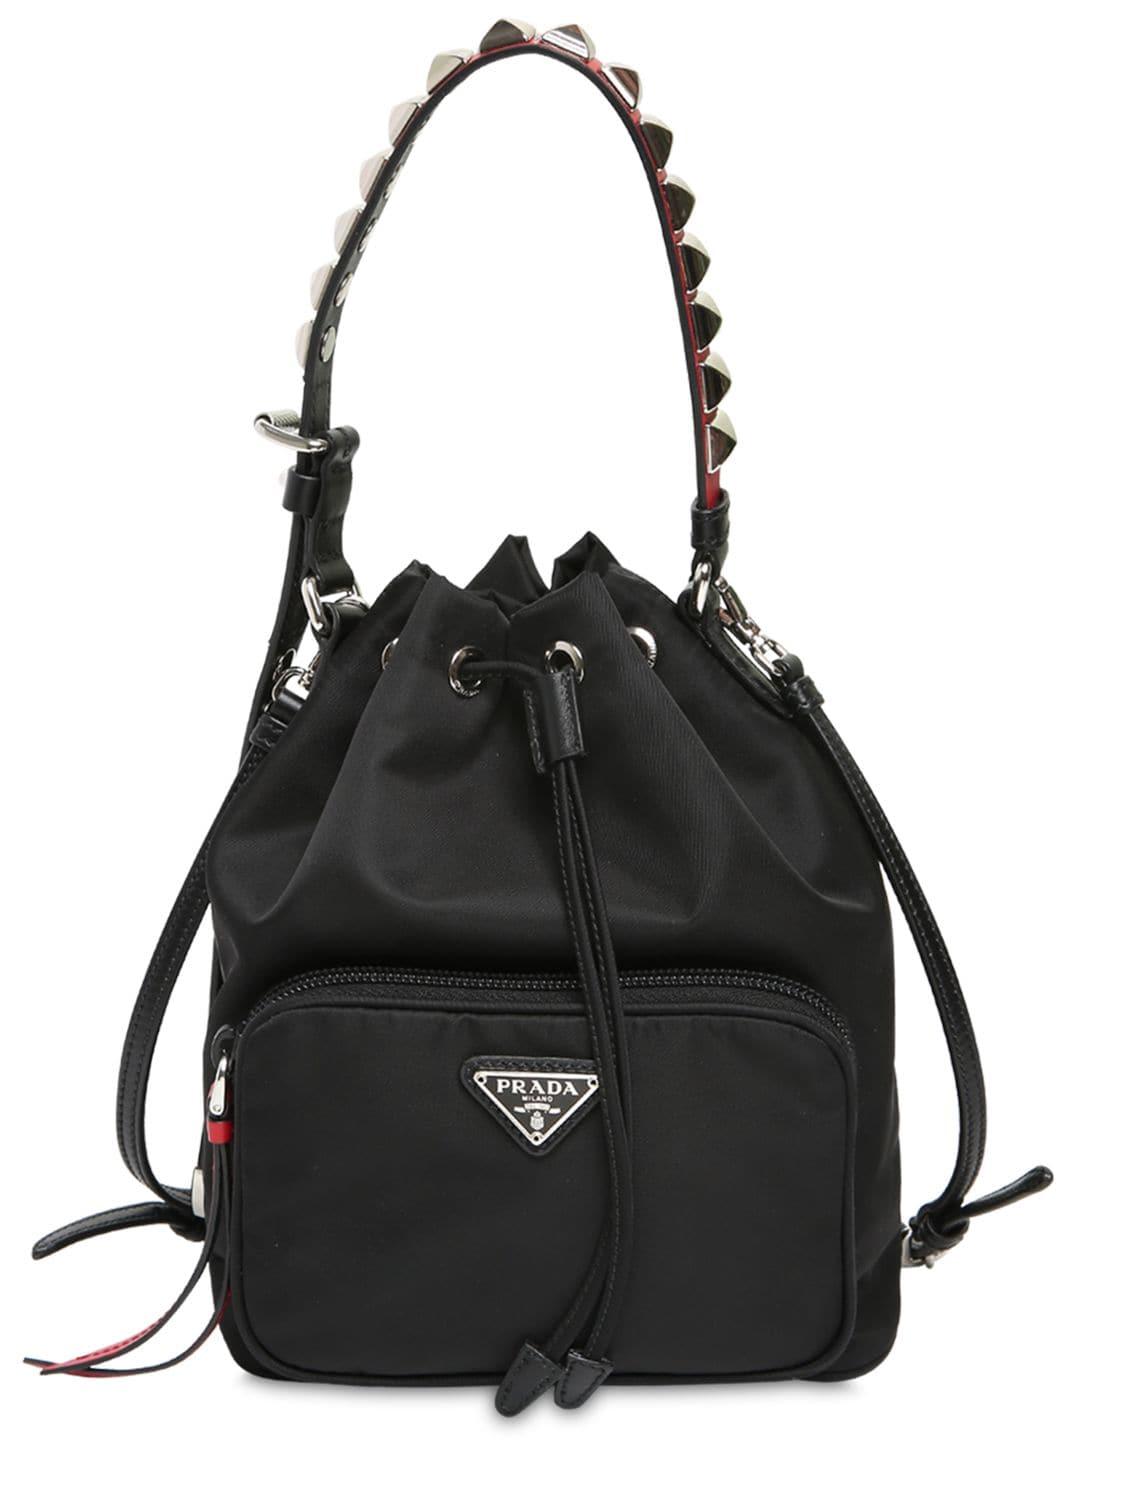 Prada Synthetic New Vela Nylon Bucket Bag W/ Studs in Black/Red (Black ...